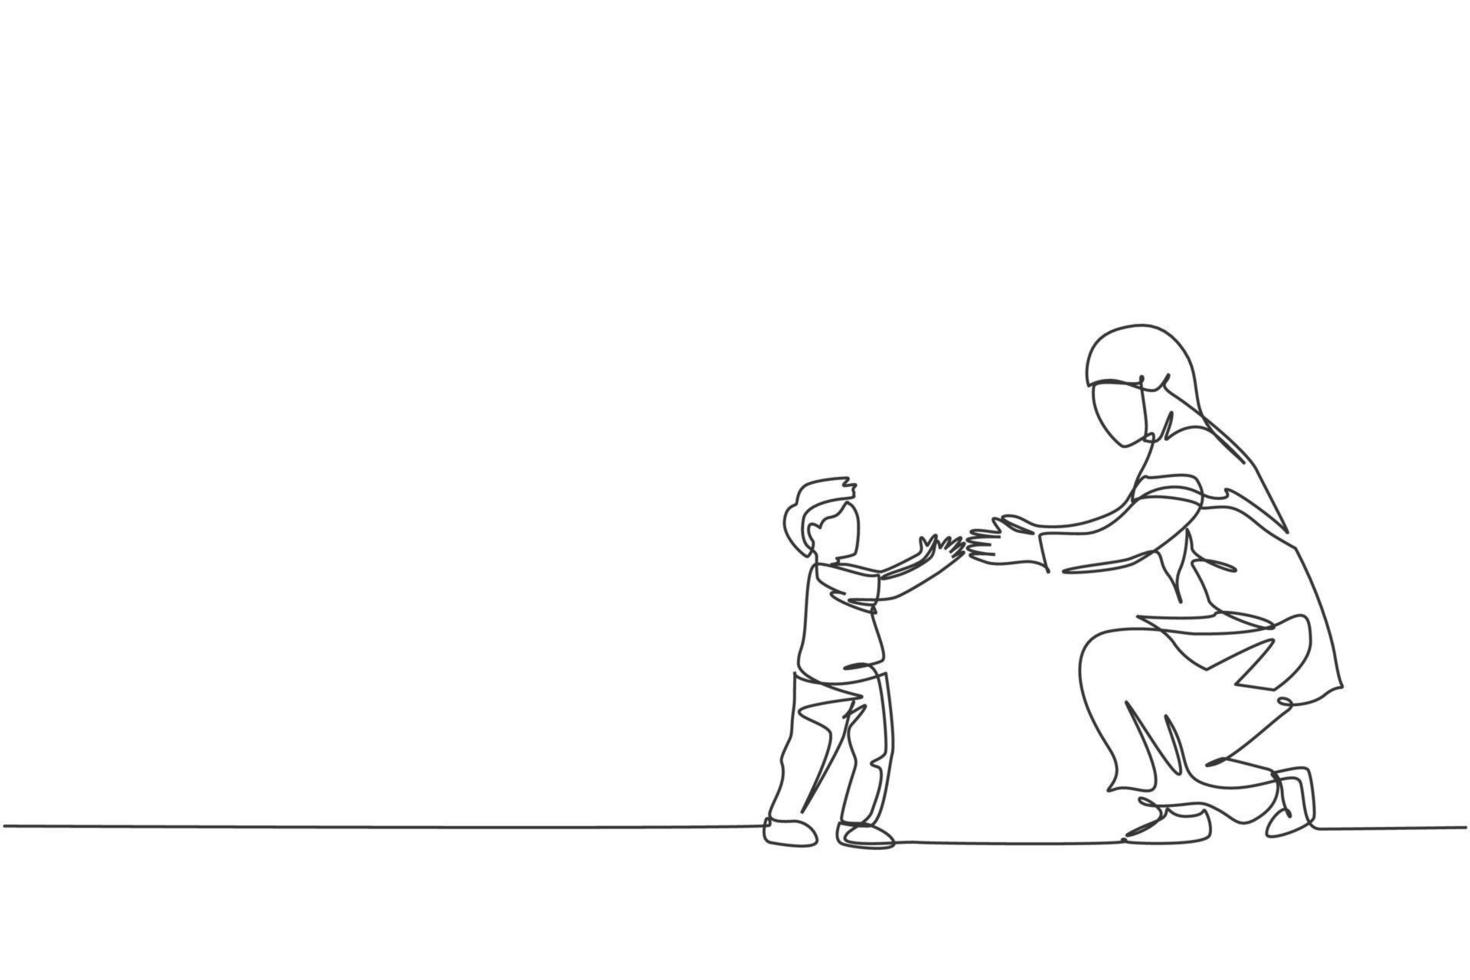 um desenho de linha única do menino da criança islâmica aprender a andar para a mãe e pronto para pegar a ilustração vetorial. conceito parental de família muçulmana árabe feliz. design moderno de desenho de linha contínua vetor